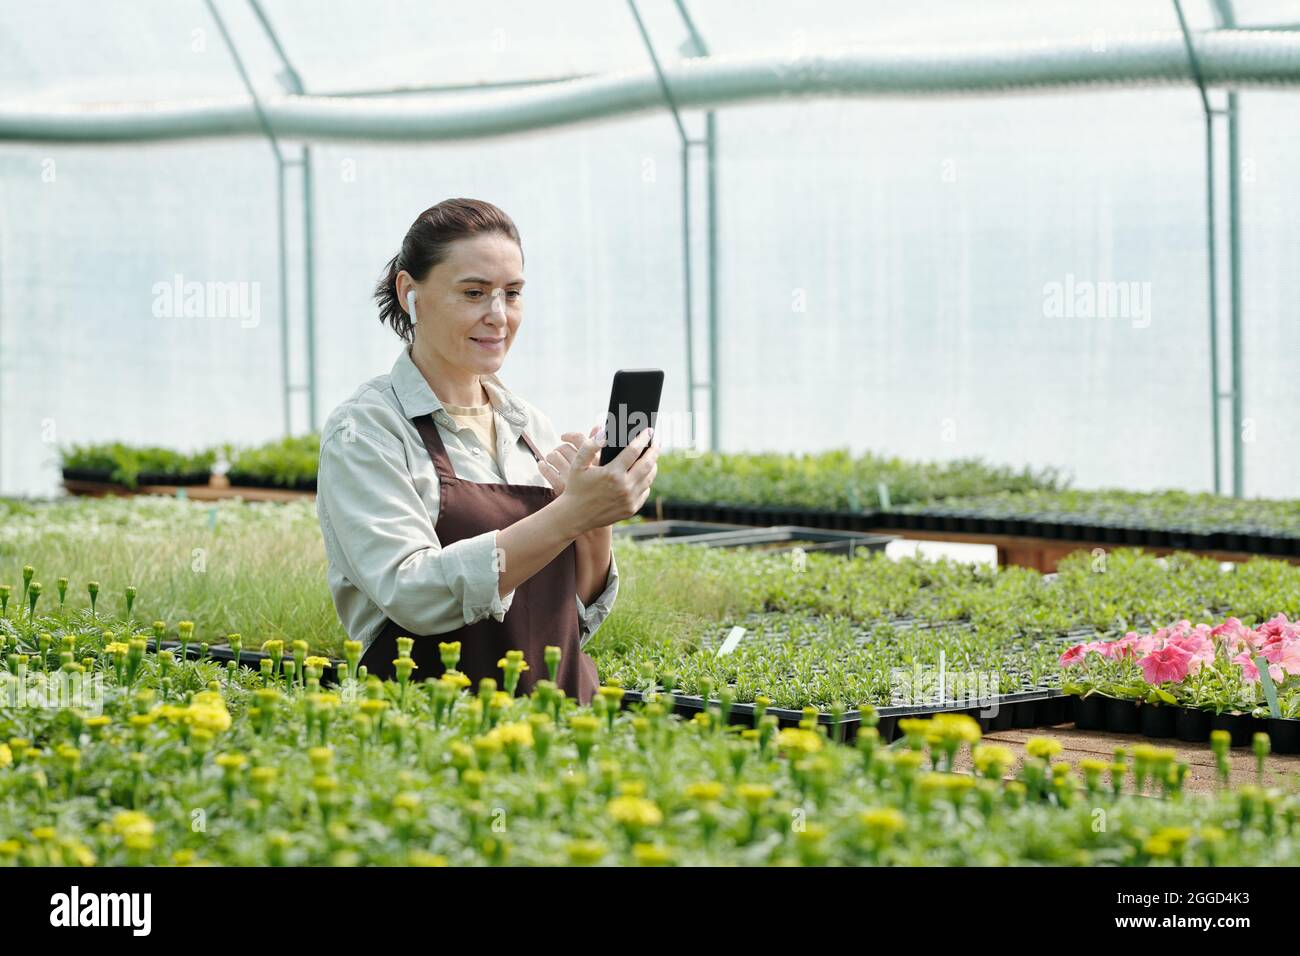 Zeitgenössische Frau mit Smartphone in der Hand und Ohrhörern in den Ohren, die am Arbeitsplatz Online-Videos ansieht Stockfoto